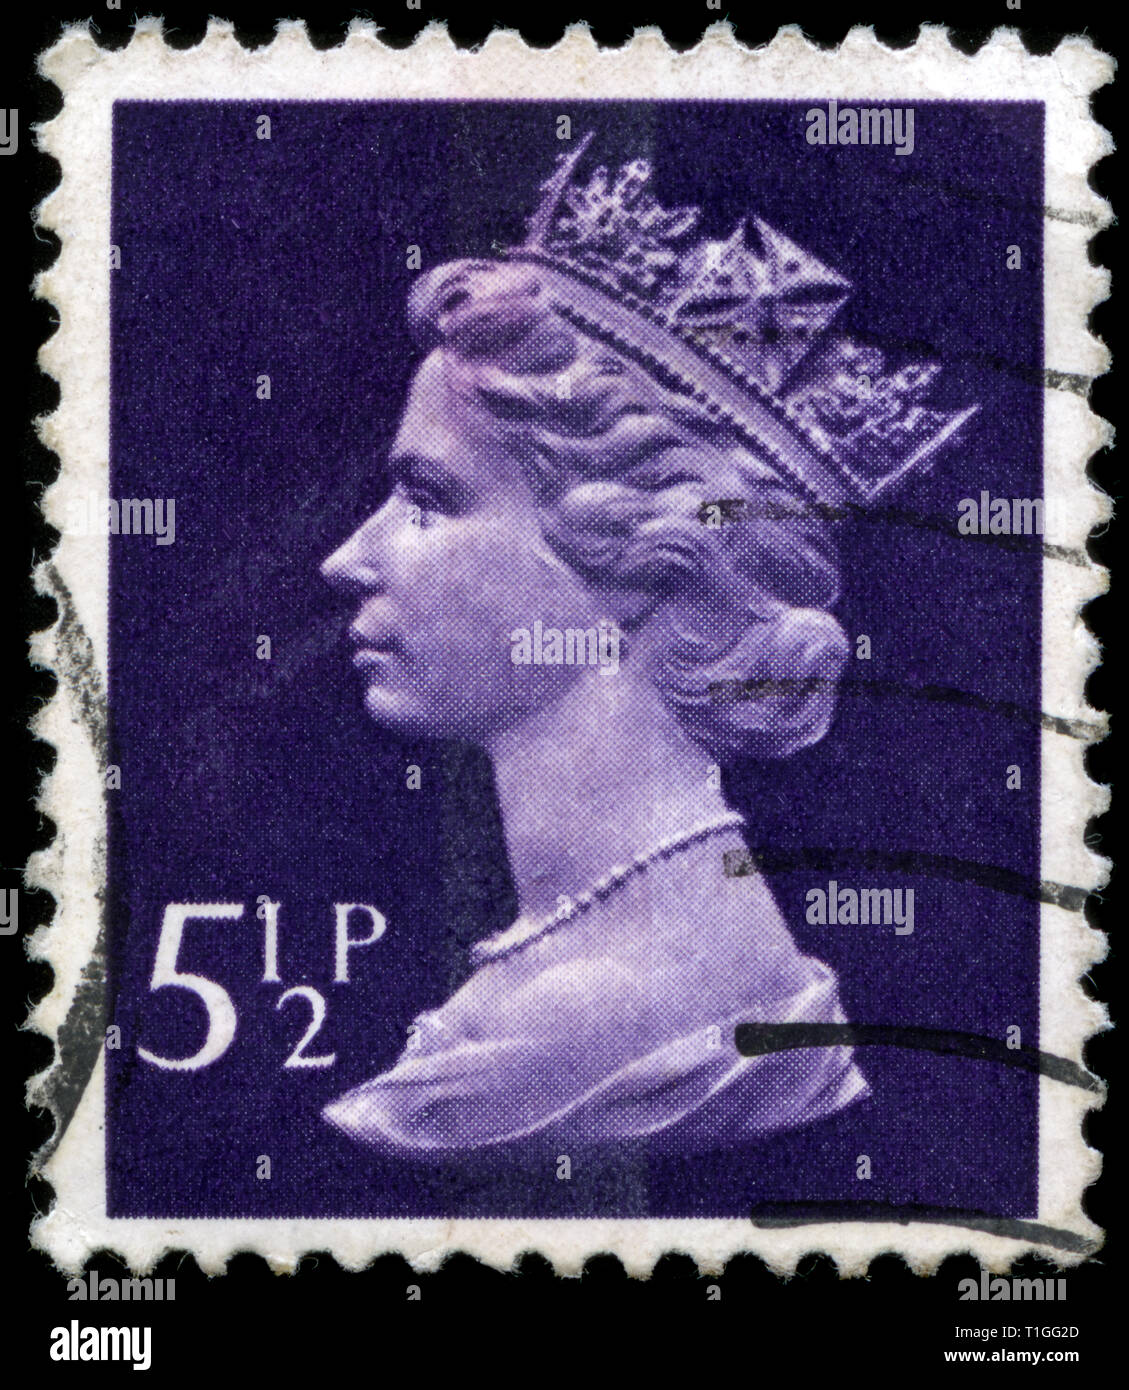 Timbre-poste du Royaume-Uni et l'Irlande du Nord dans le Queen Elizabeth II - virgule Machin - Normal Perfs série émise en 1975 Banque D'Images